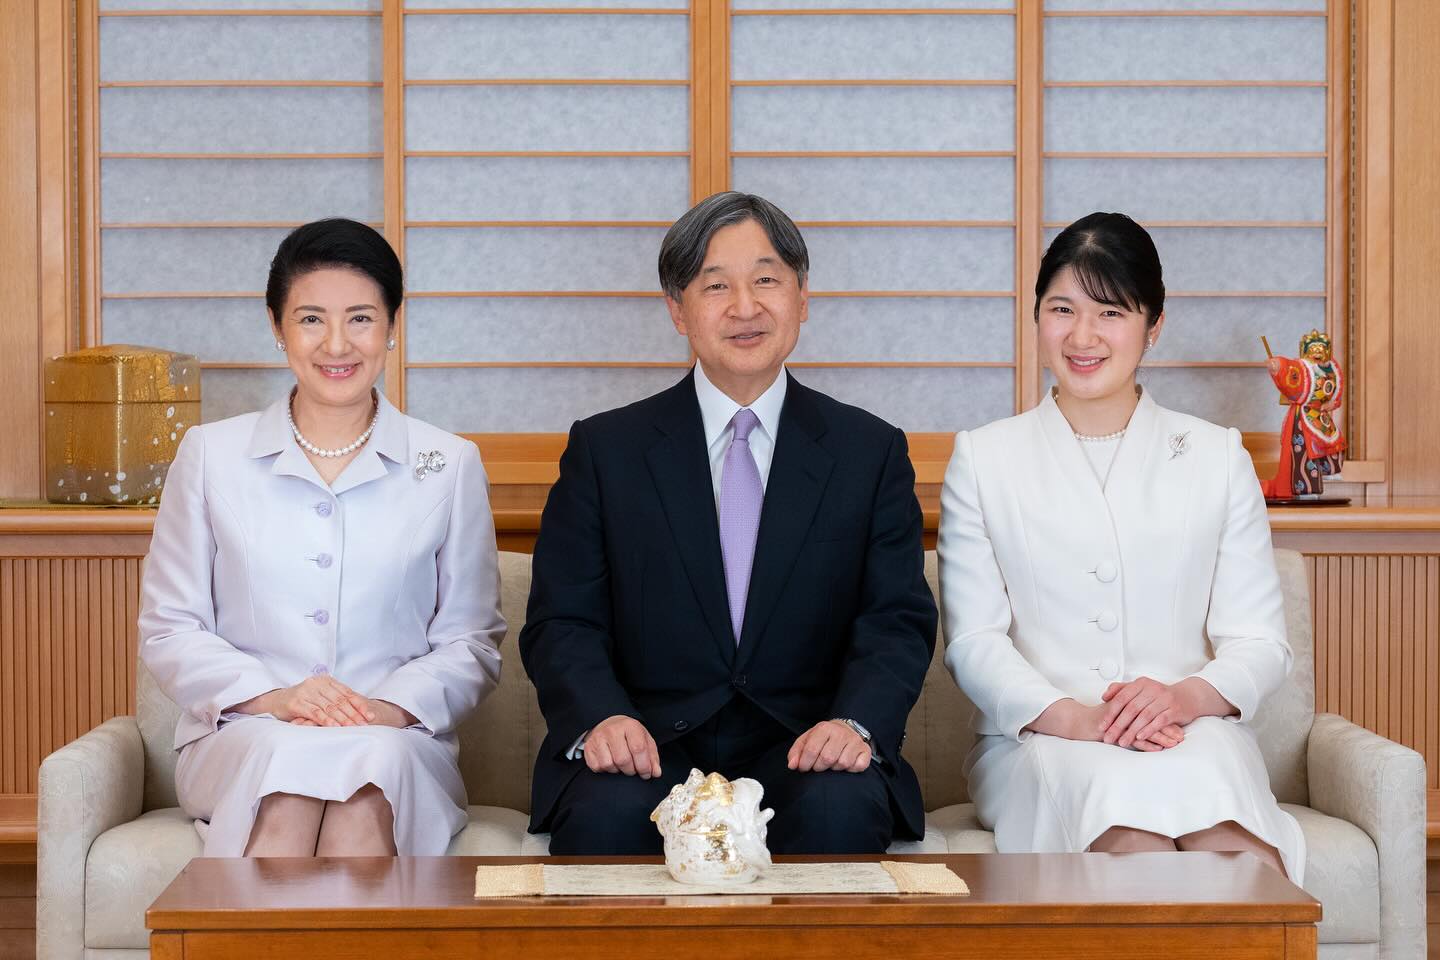 Императорская семья Японии впервые завела Instagram-аккаунт